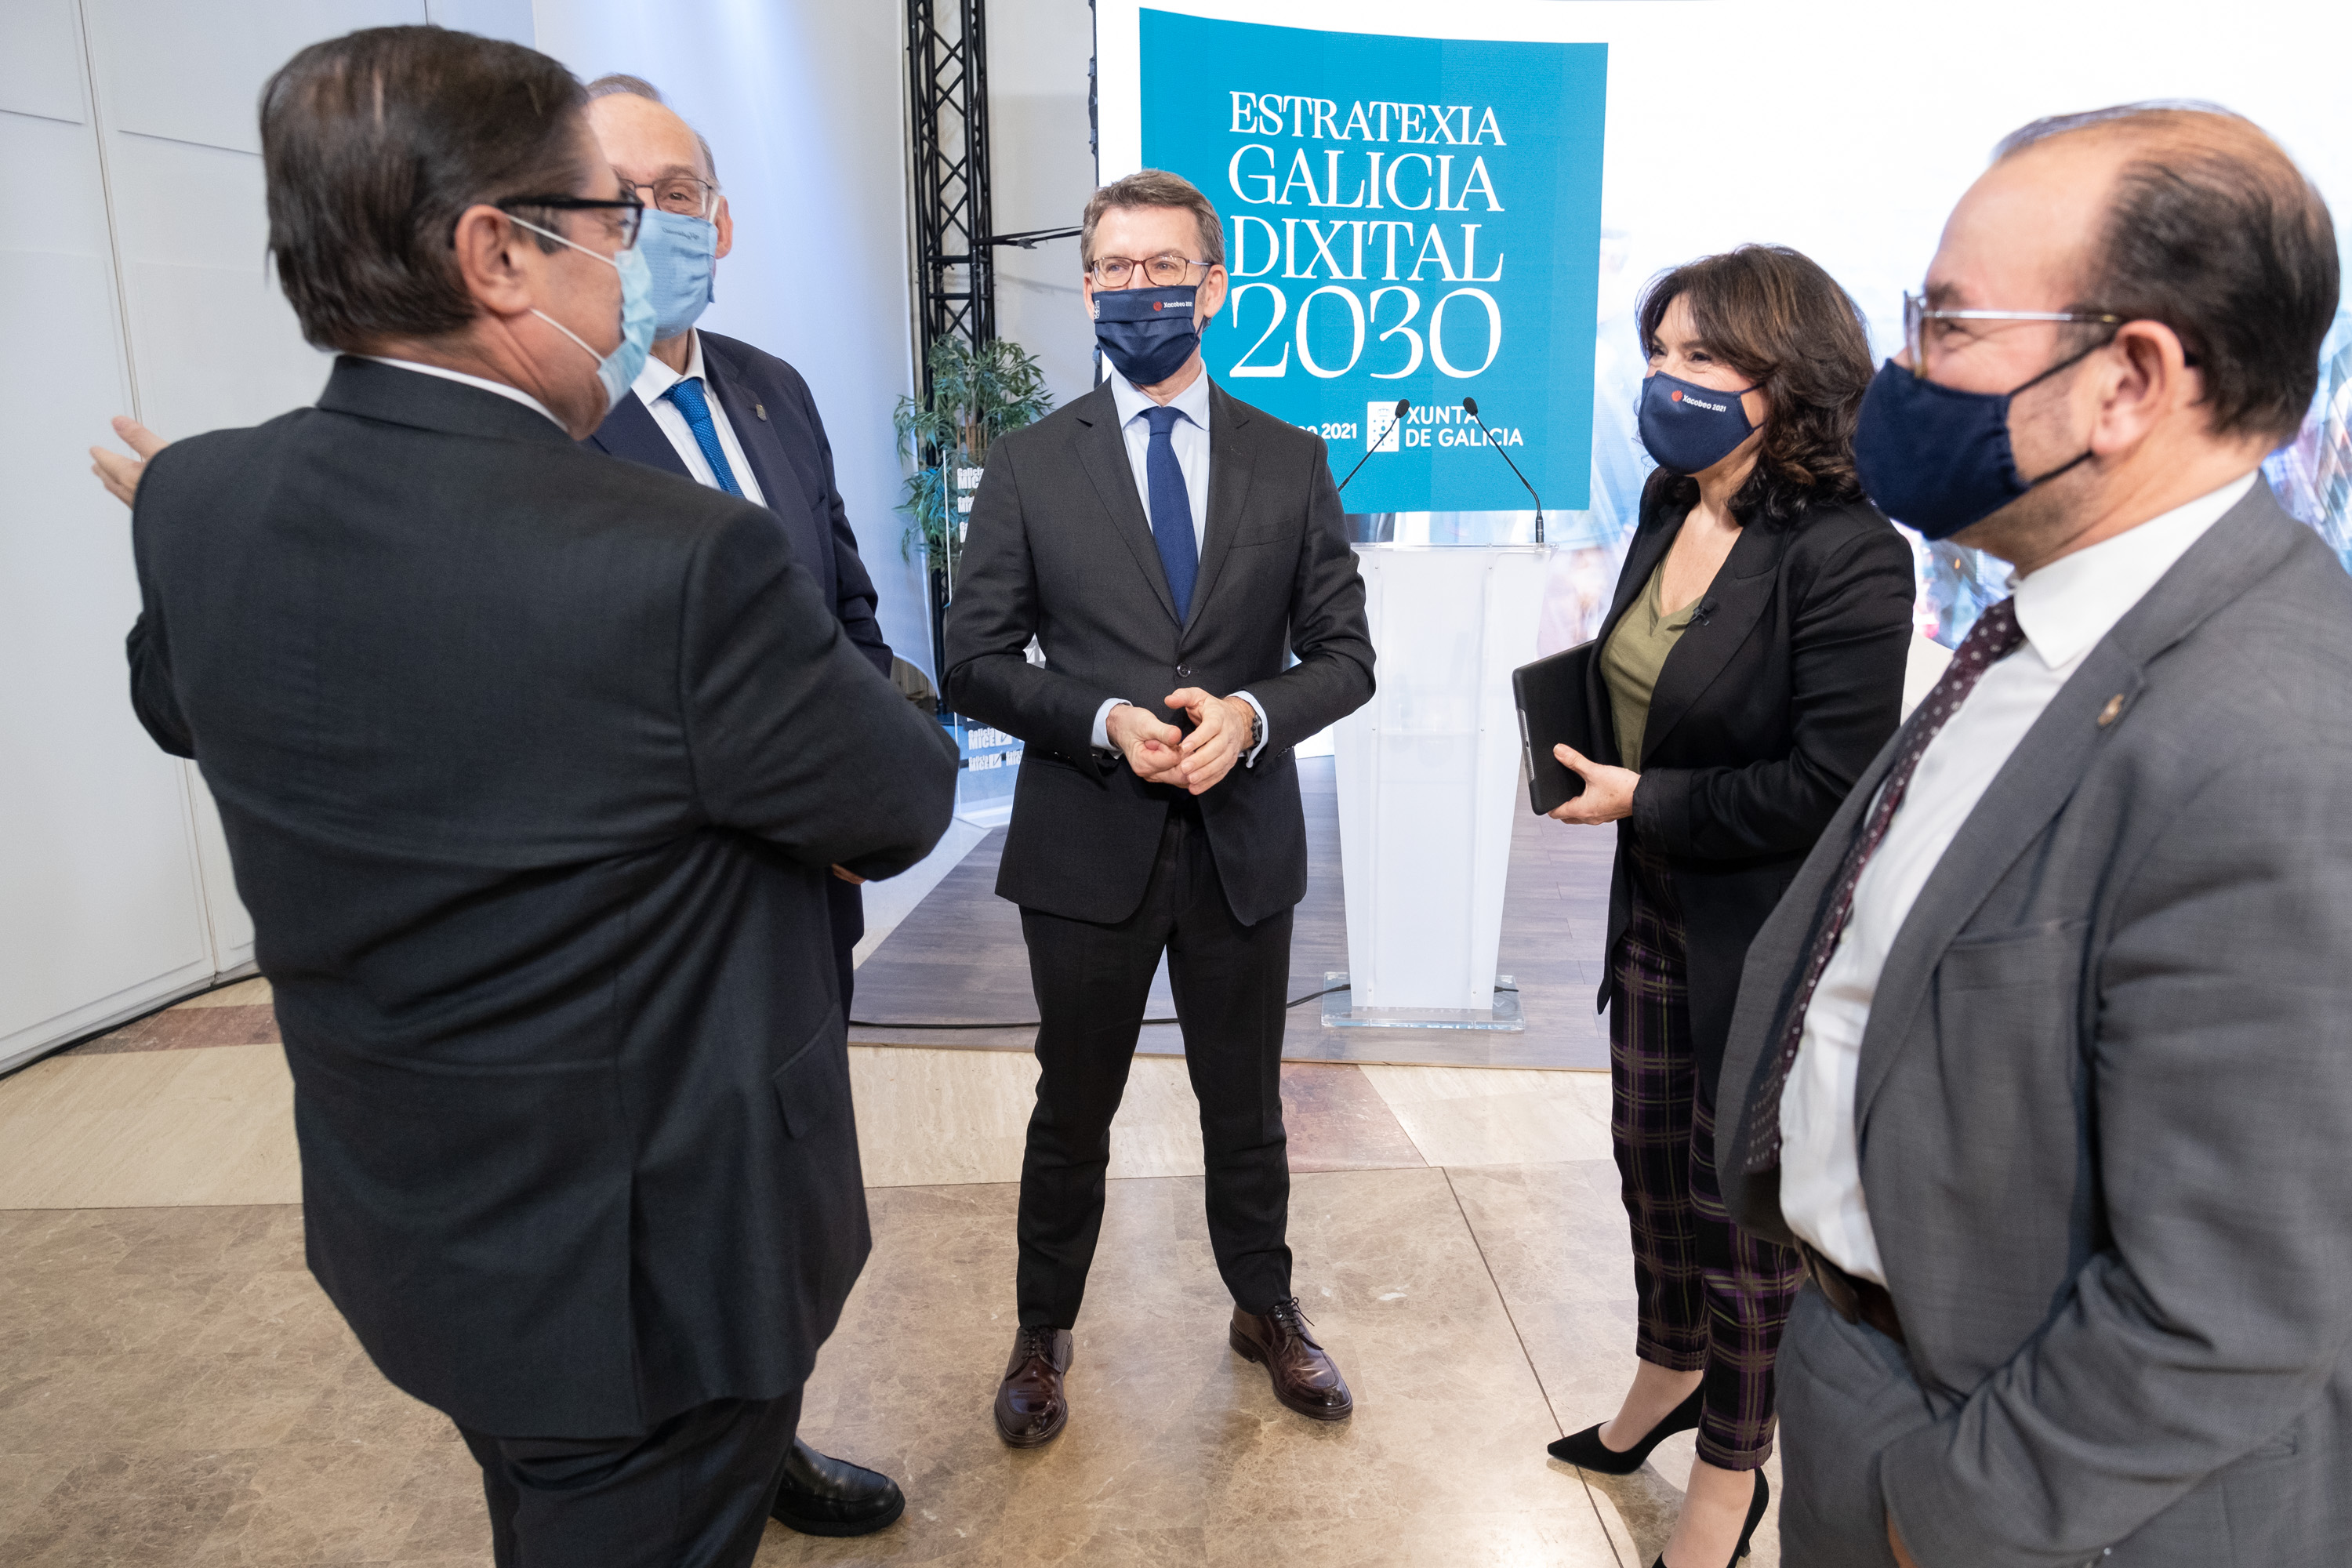 Estratexia Galicia Dixital 2030 (EGD2030)